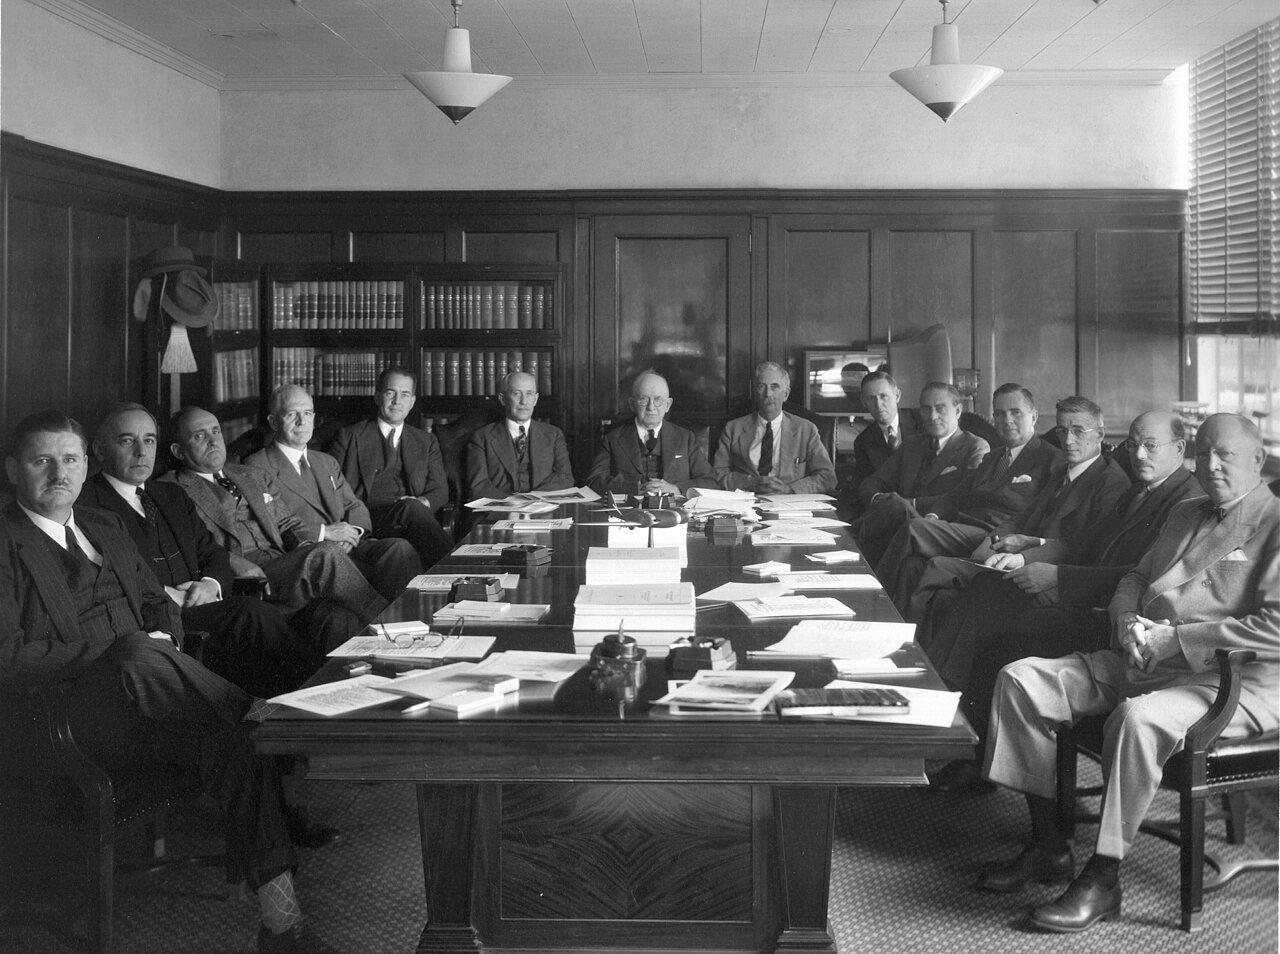 Mitglieder des National Advisory Committee on Aeronautics, des Vorgängers der heutigen US-Raumfahrtbehörde, bei einer Sitzung im Jahr 1938.